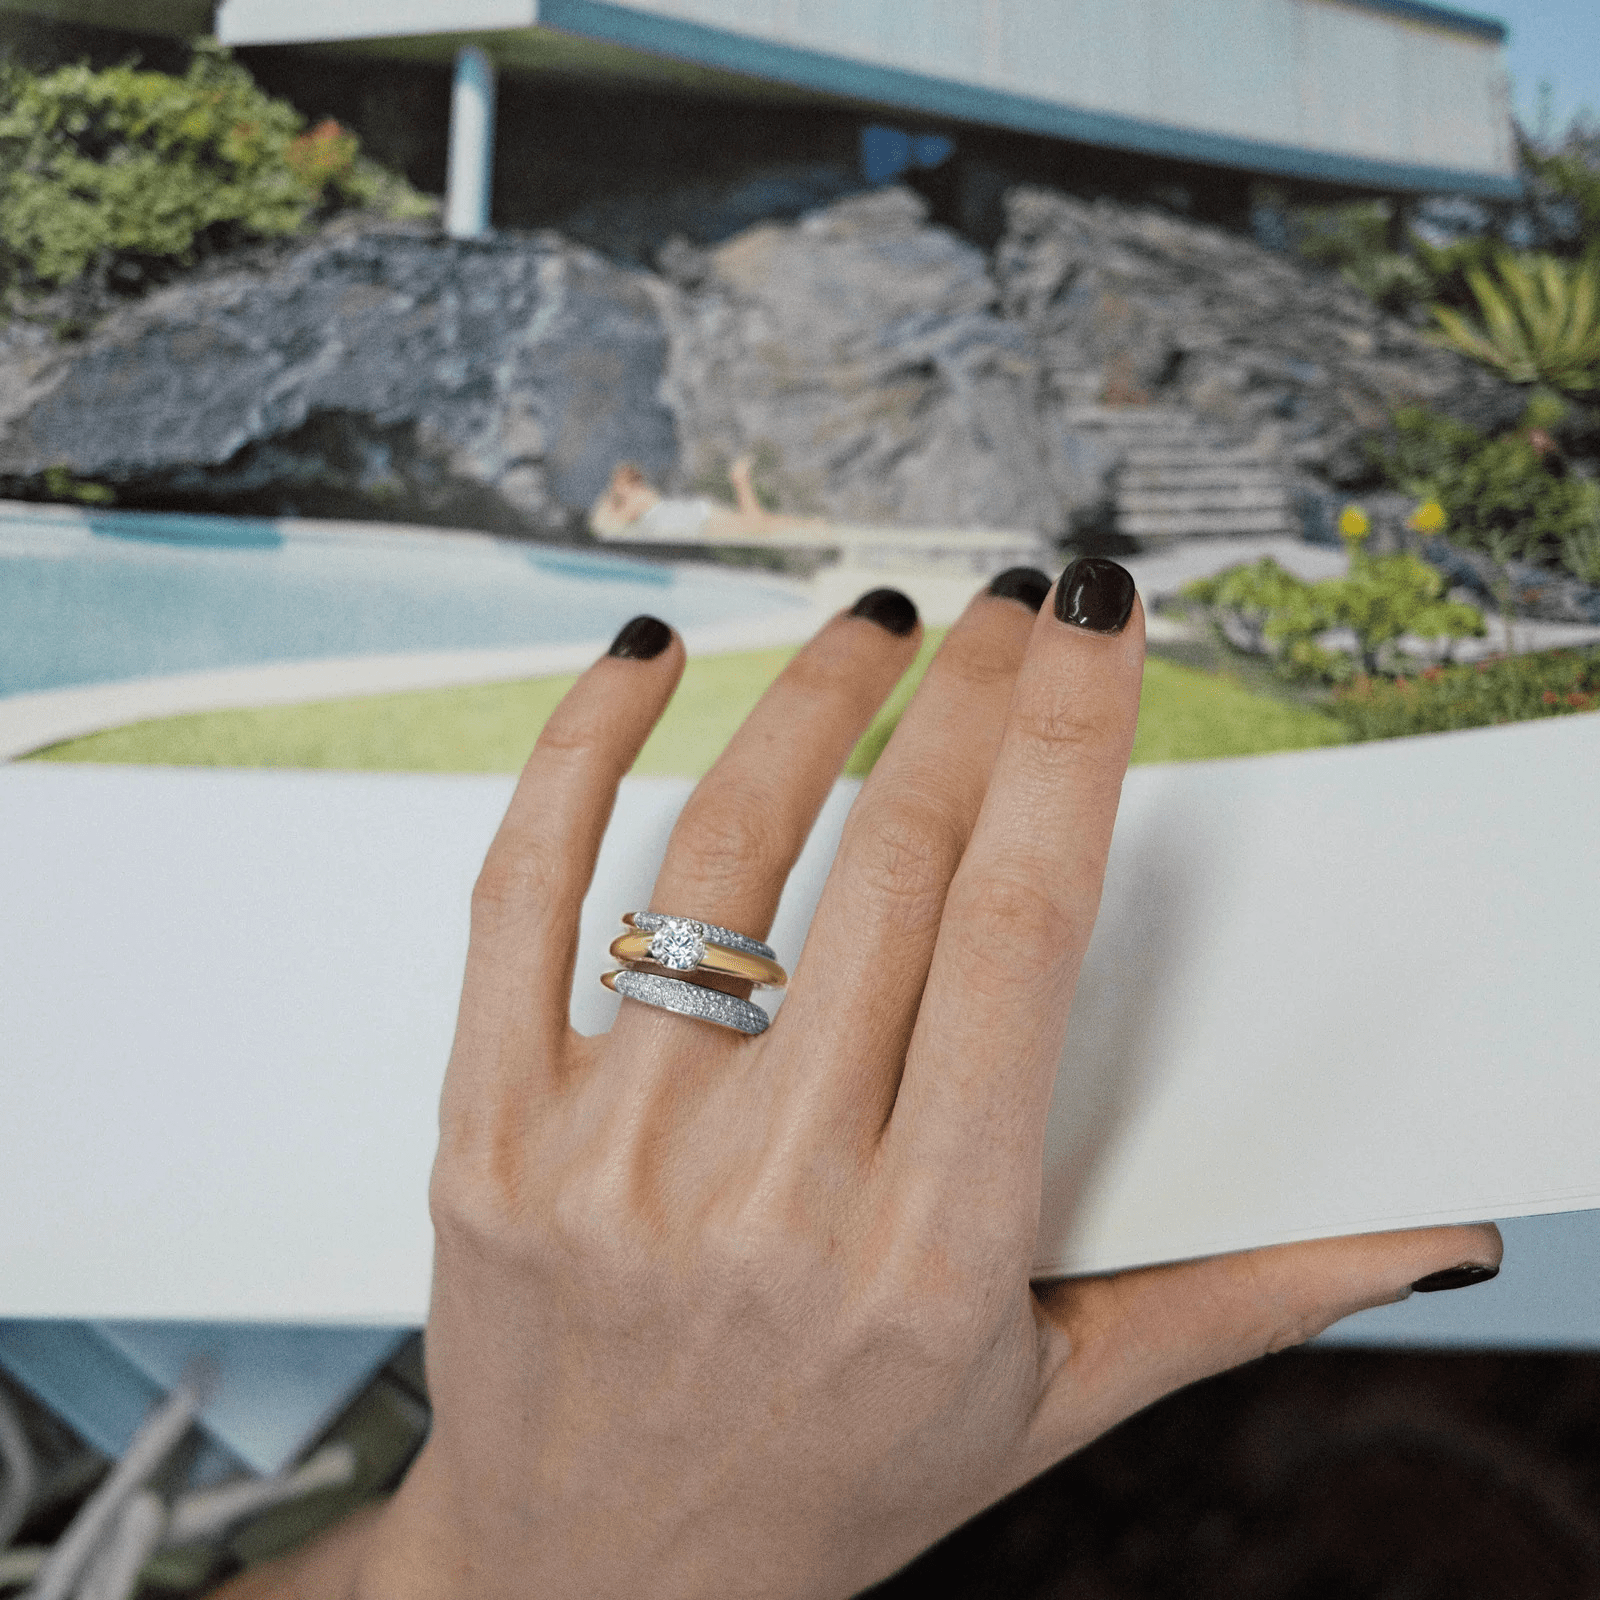 Rising Tusk Ring with Round Diamond - Gabriela Artigas